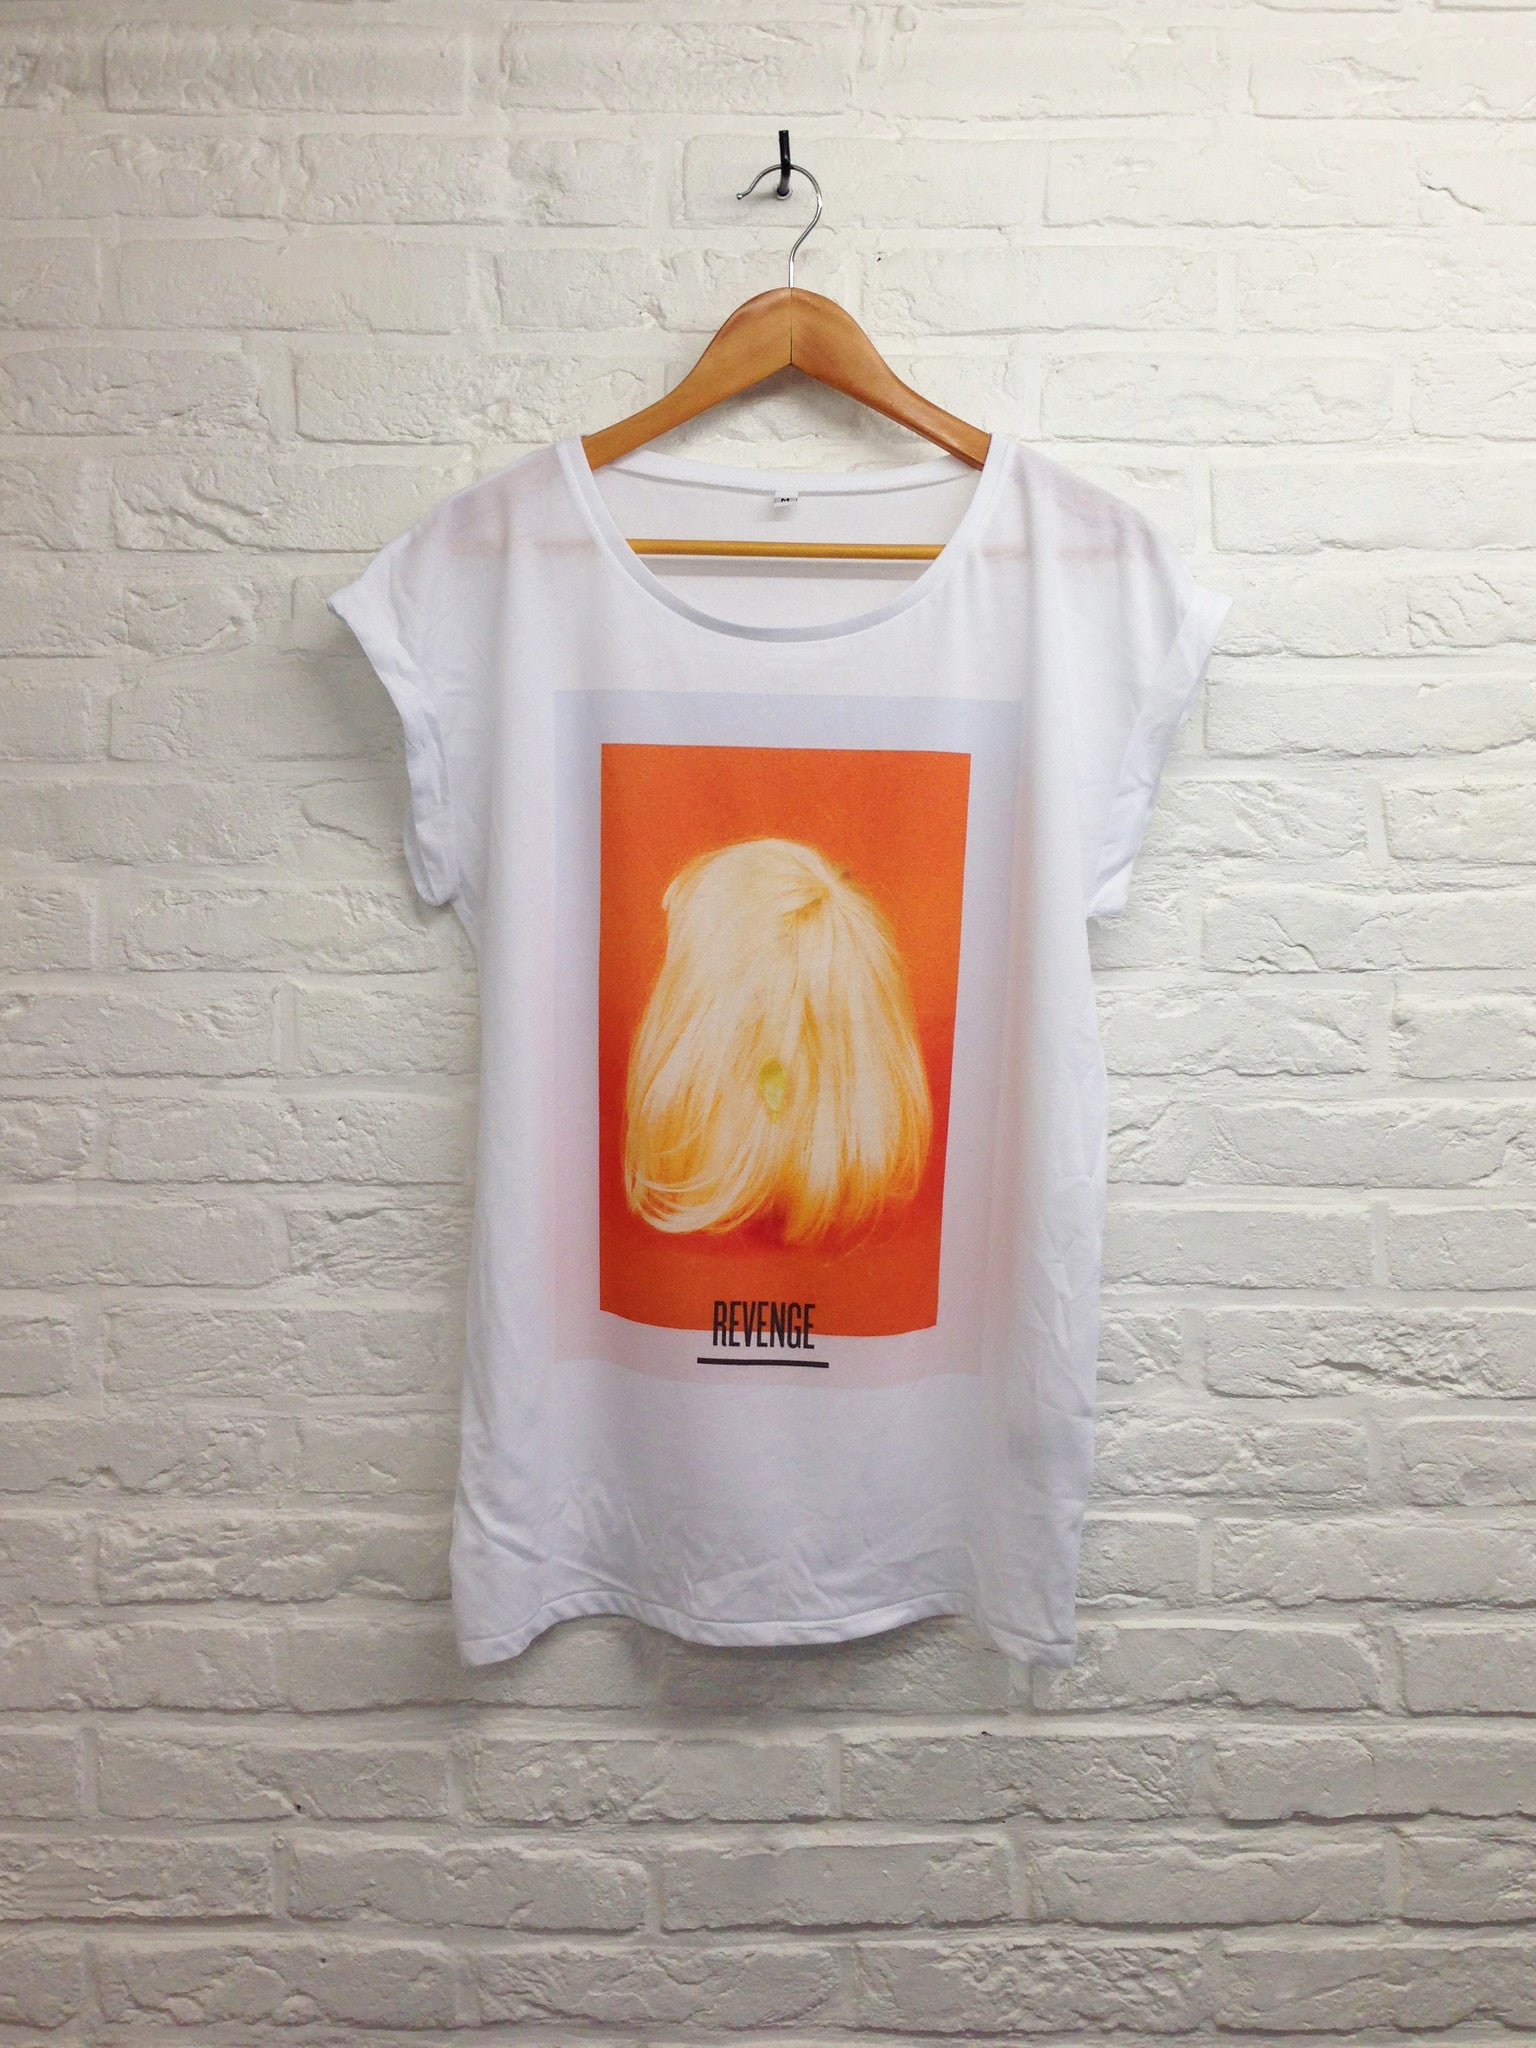 TH Gallery - Revenge - Femme-T shirt-Atelier Amelot